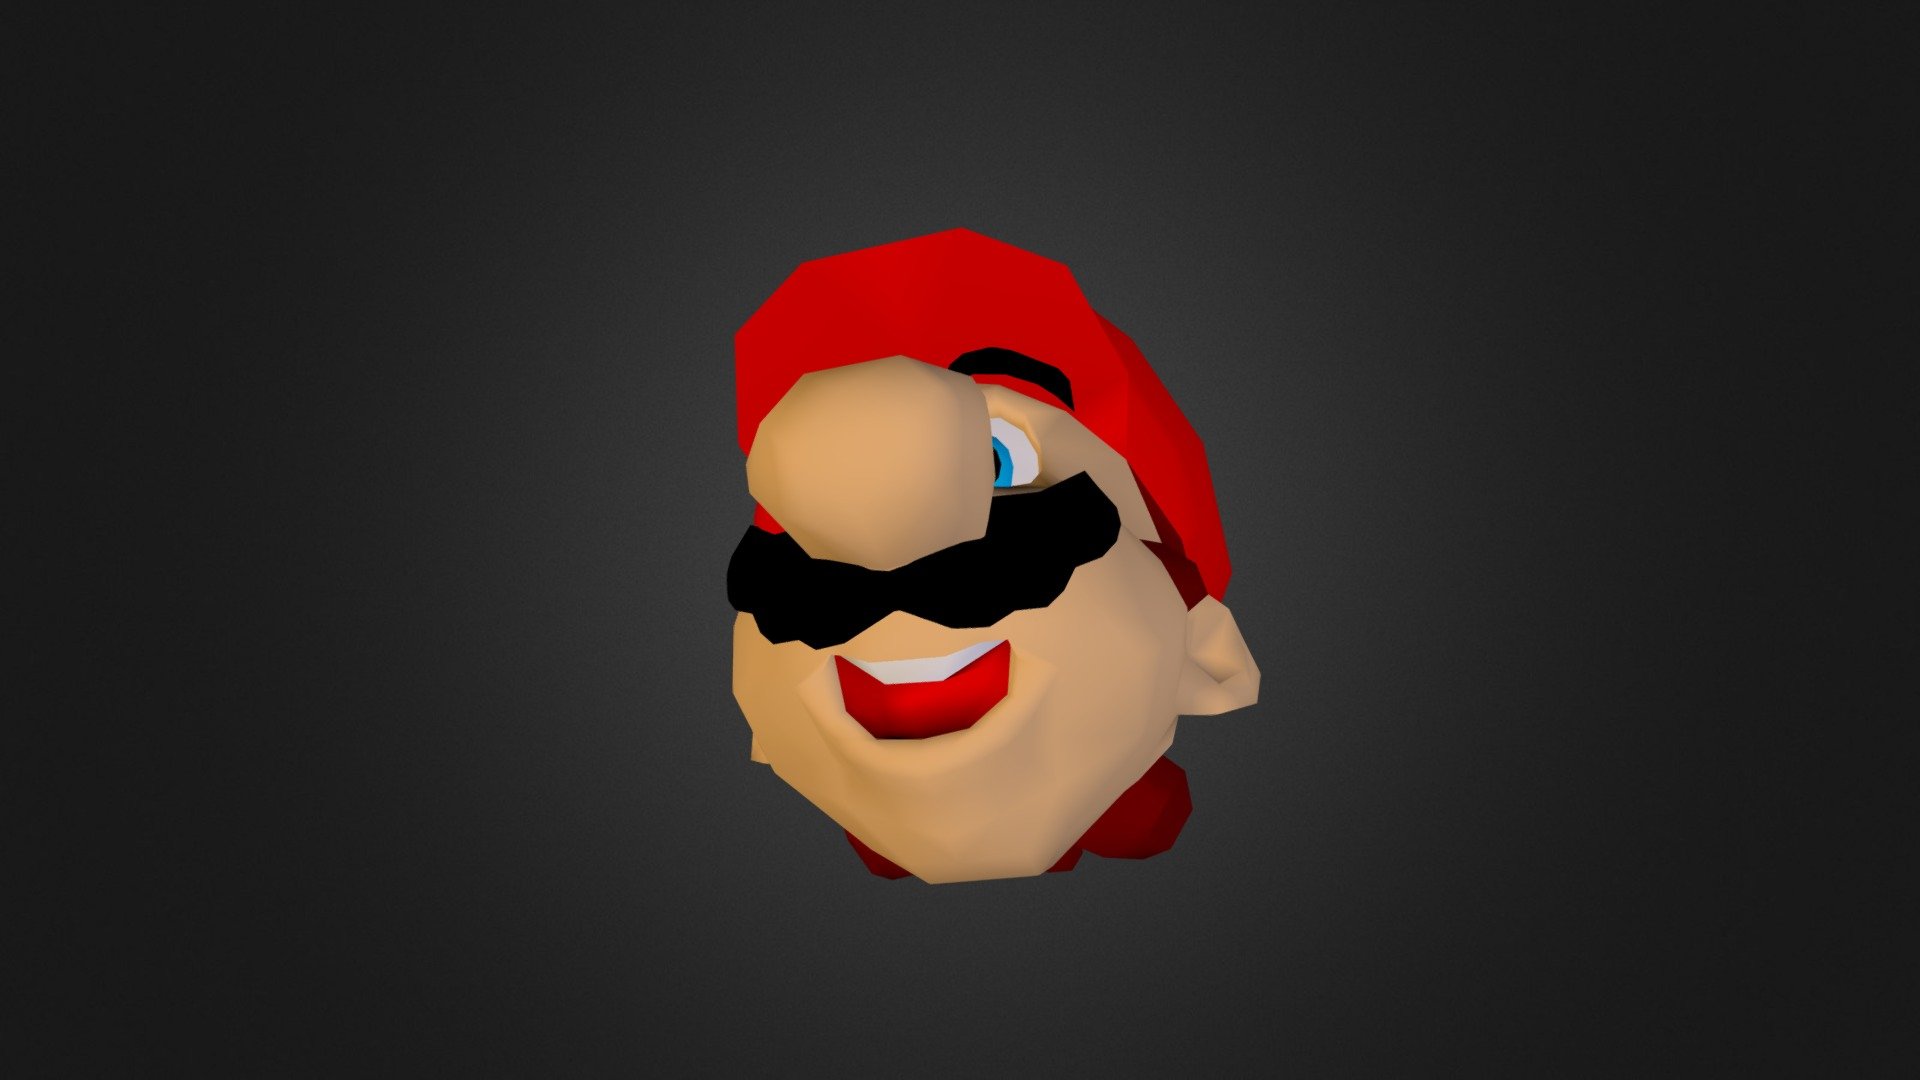 Mario Head - 3D model by frannyw1807 [5ccc7c4] - Sketchfab